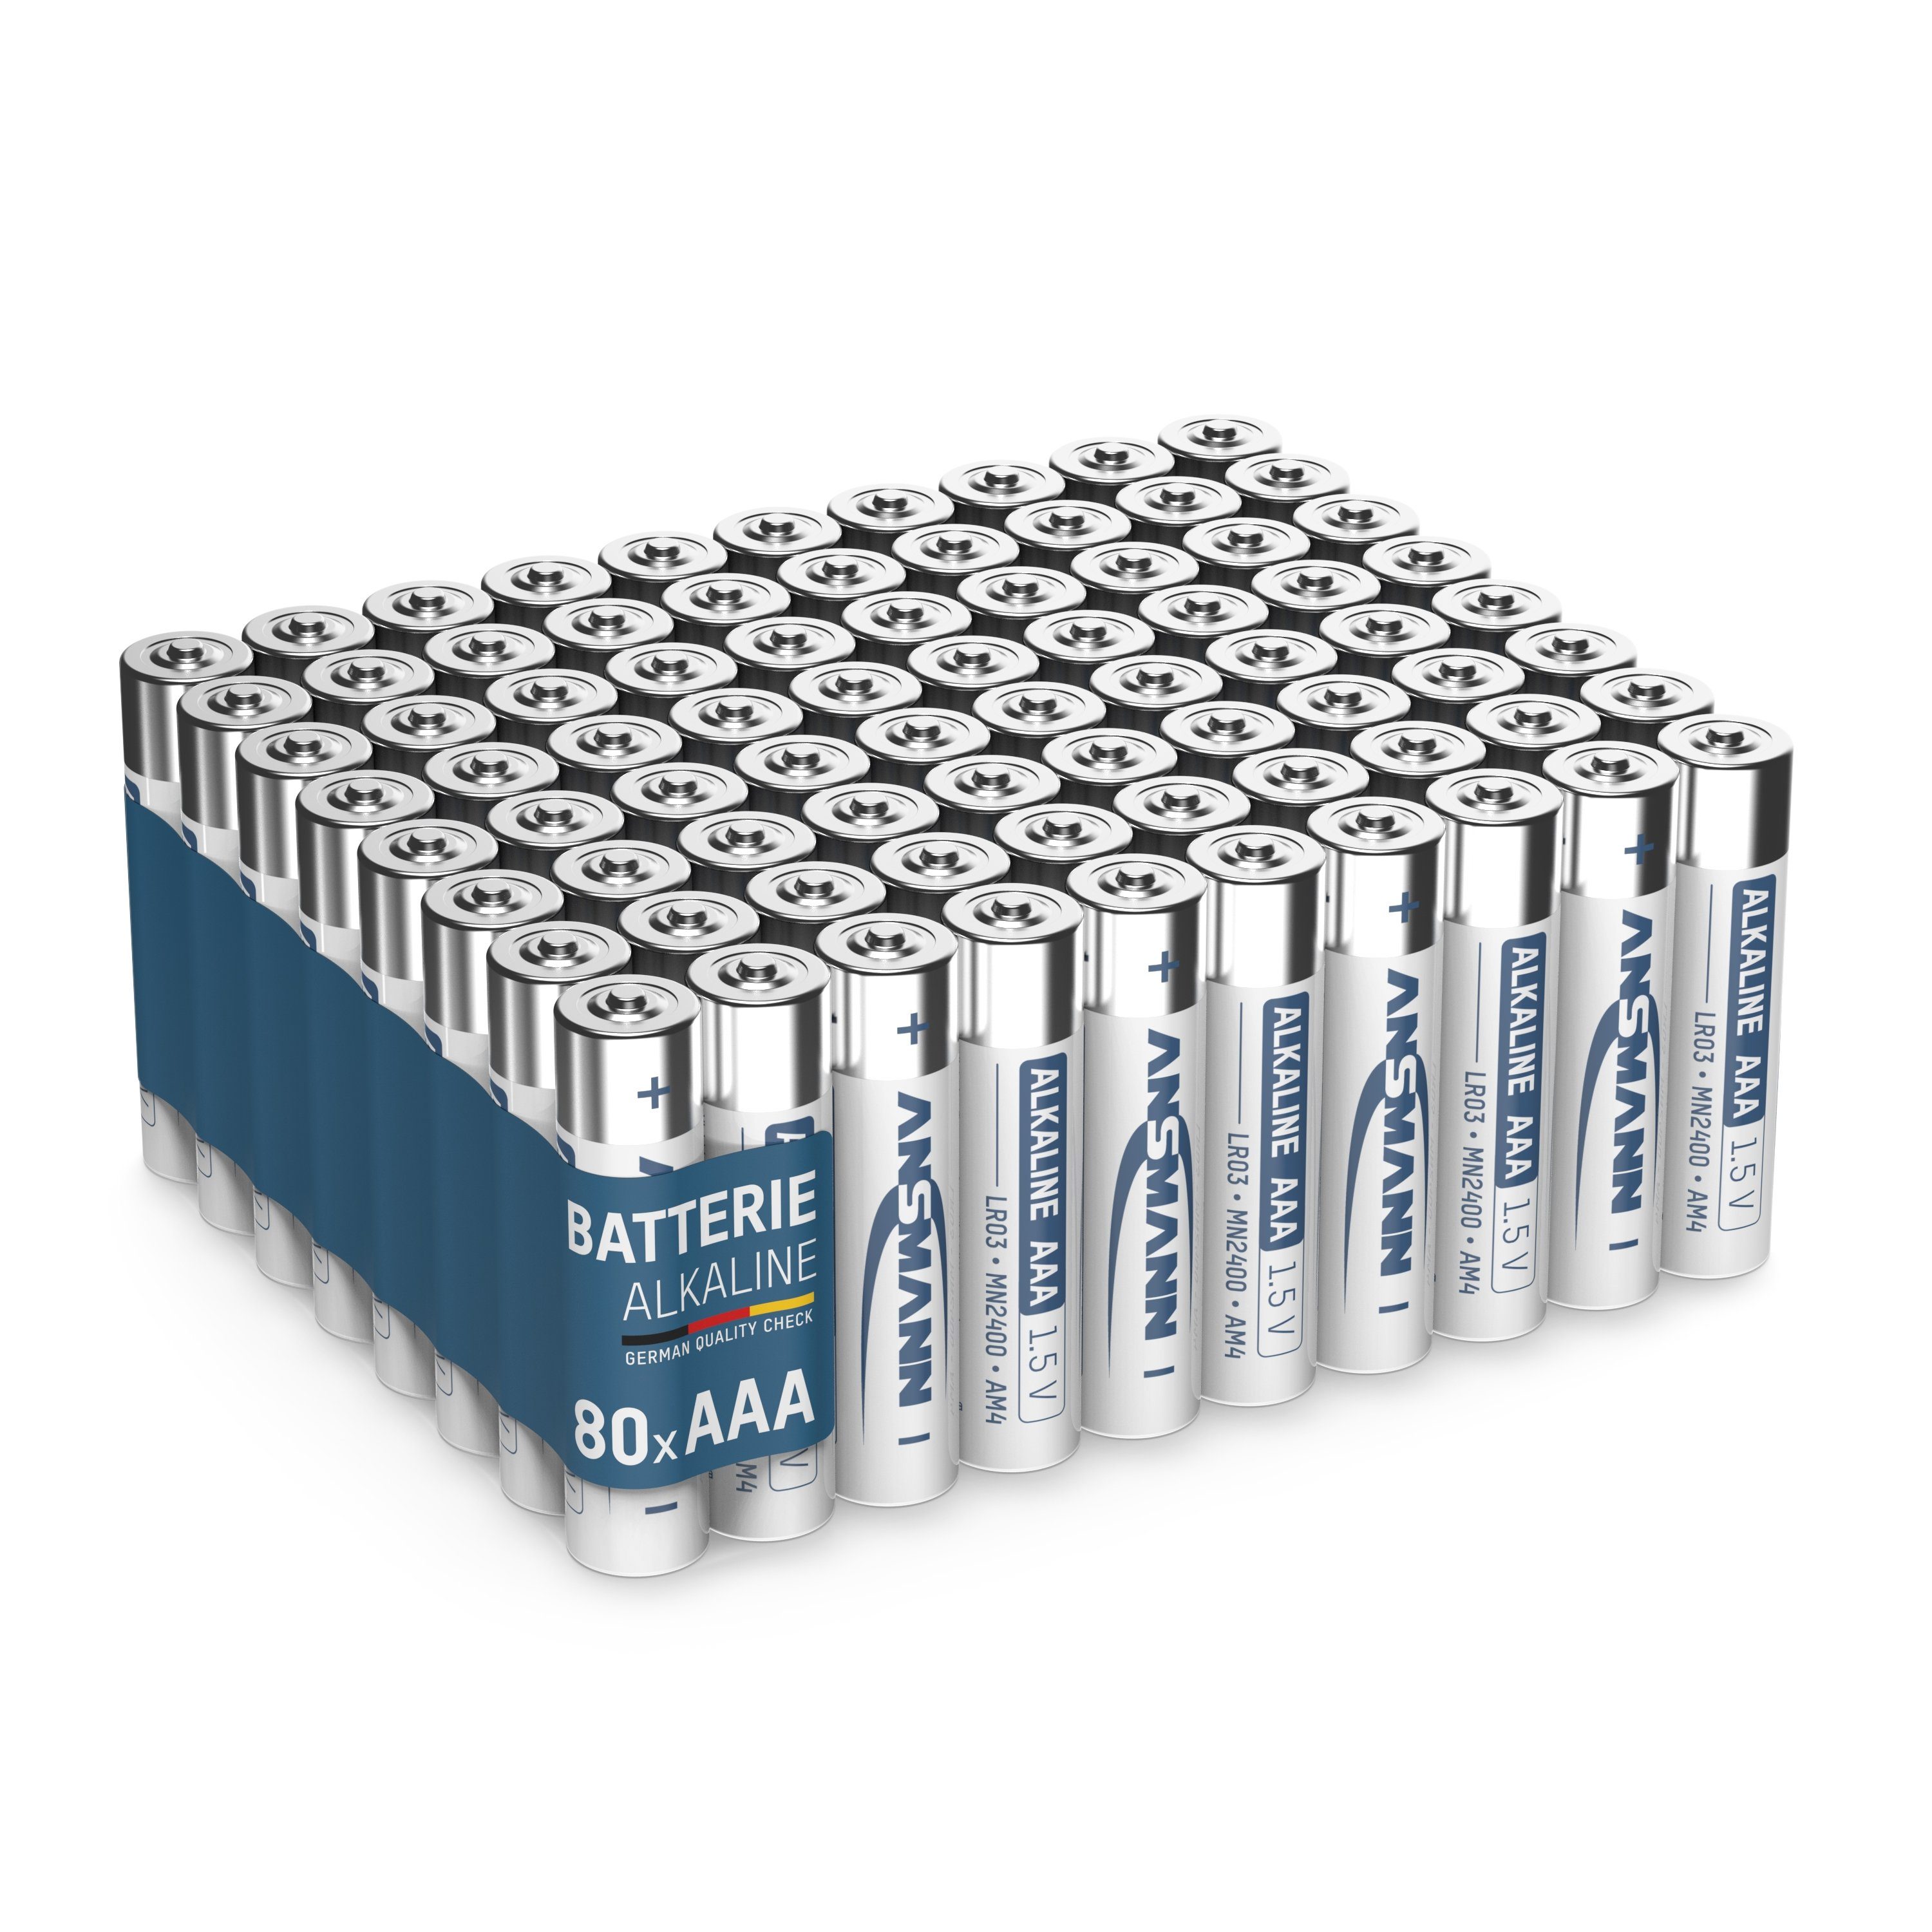 ANSMANN® Batterien AAA 80 Stück - Alkaline Micro Batterie für Lichterkette uvm. Batterie